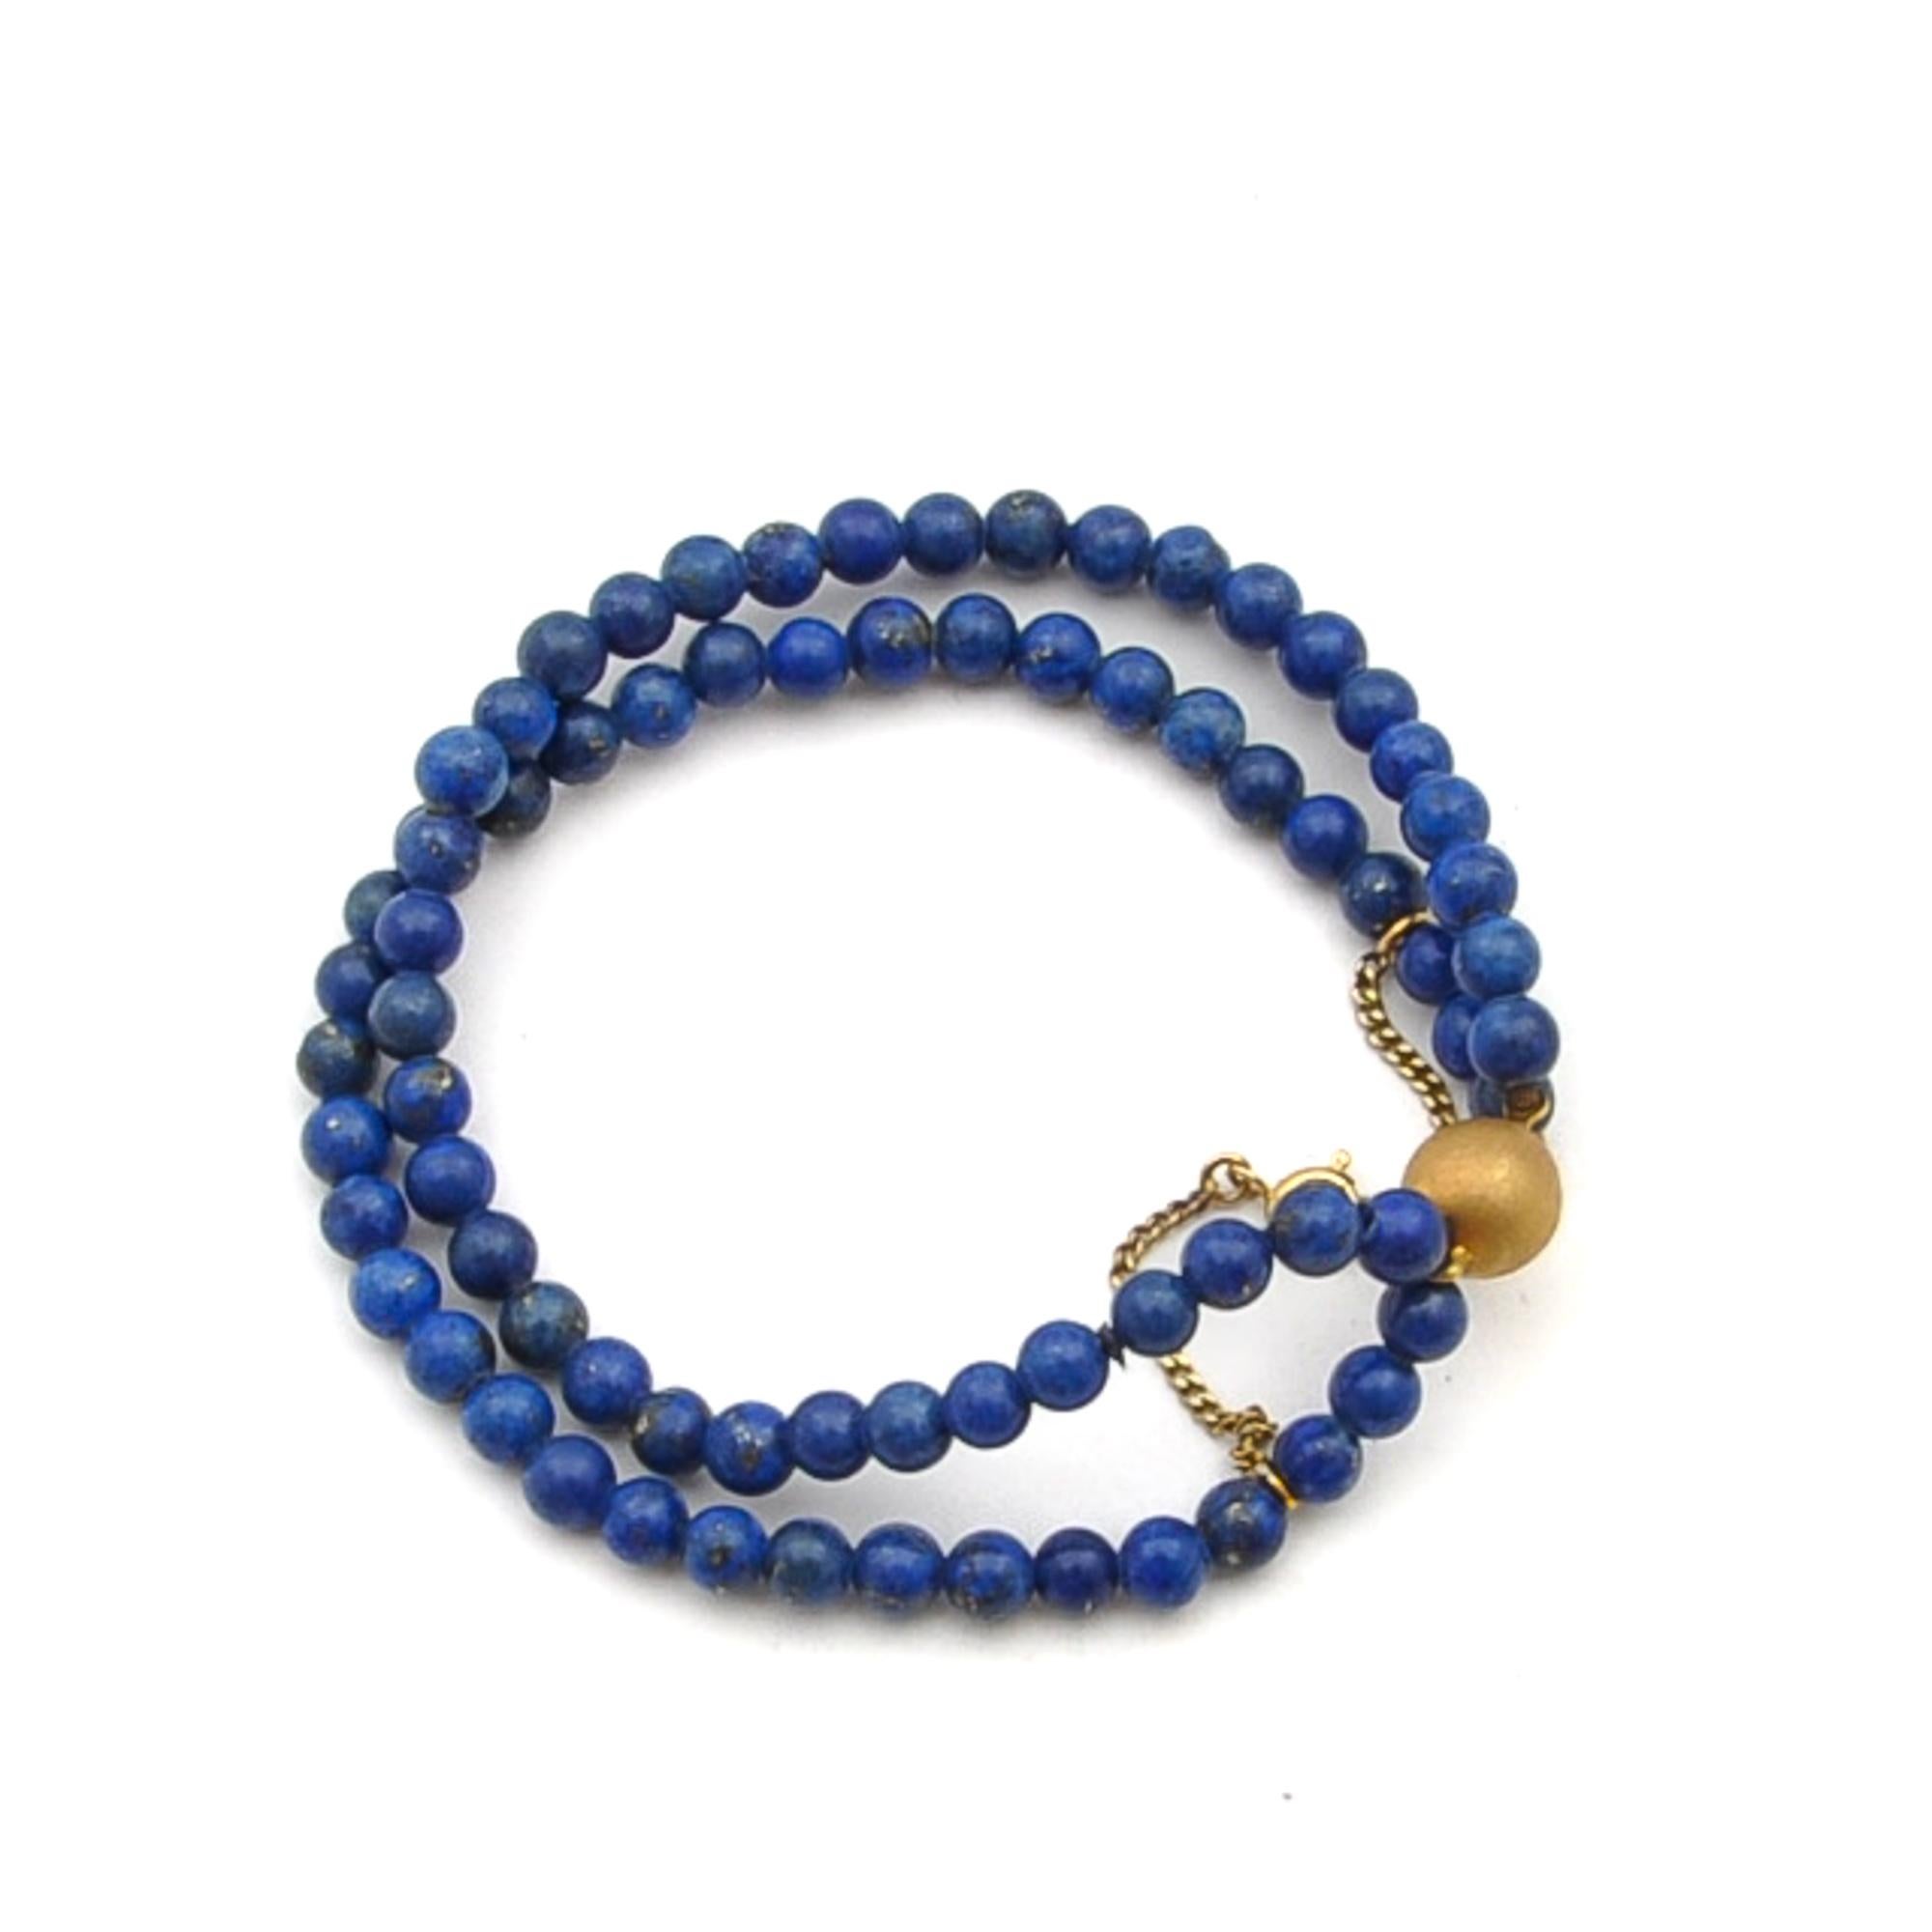 Lapislazuli-Armband aus der Mitte des 20. Jahrhunderts mit zwei Perlensträngen und einer goldenen Kugelschließe. Der Lapislazuli ist glatt rund geschliffen und hat einen schönen blauen Farbton und in dieser königsblauen Farbe schimmernde Flecken von